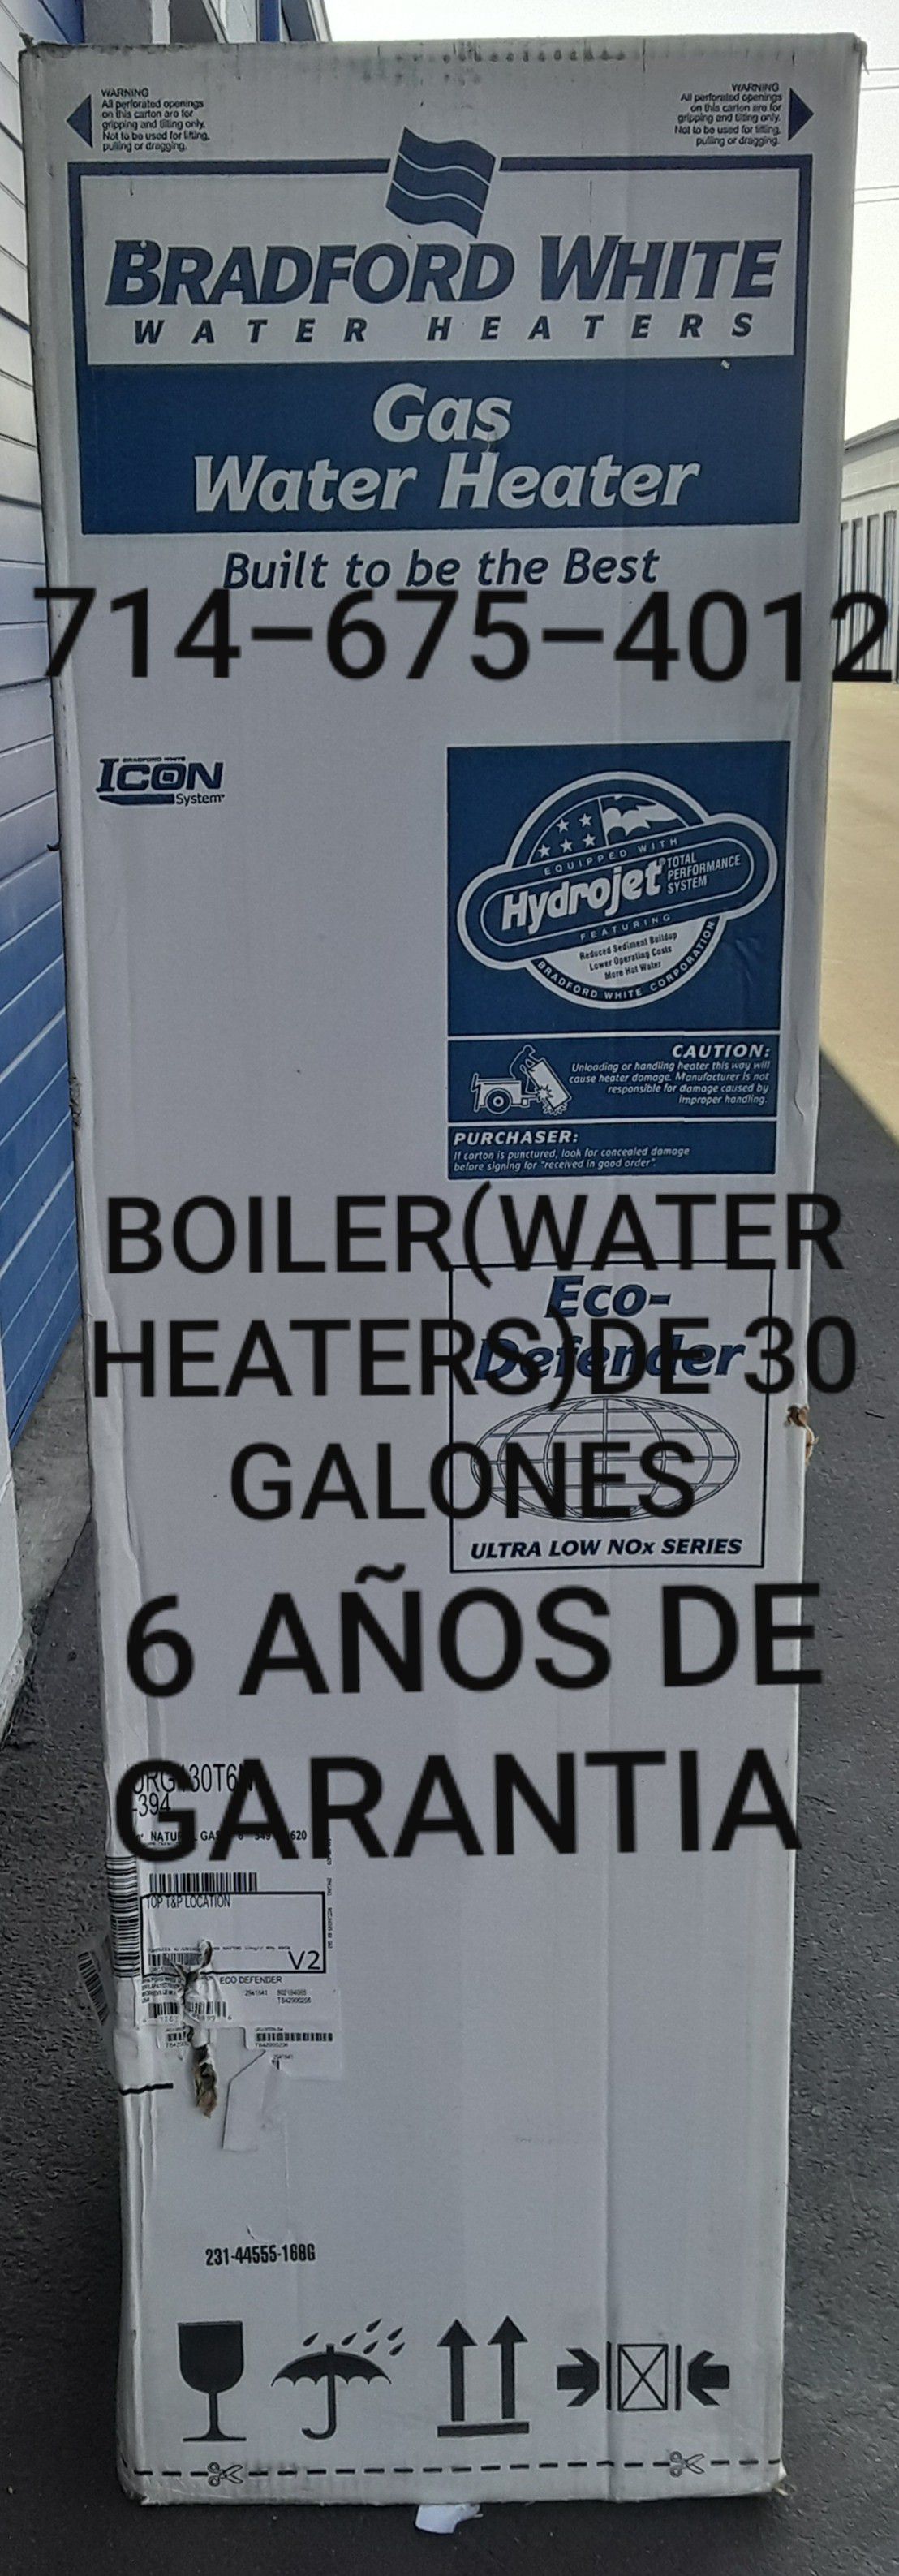 BOILER(WATER HEATERS)DE 30 GALONES NUEVO DE LA MARCA BRADFORD WHITE!!!!